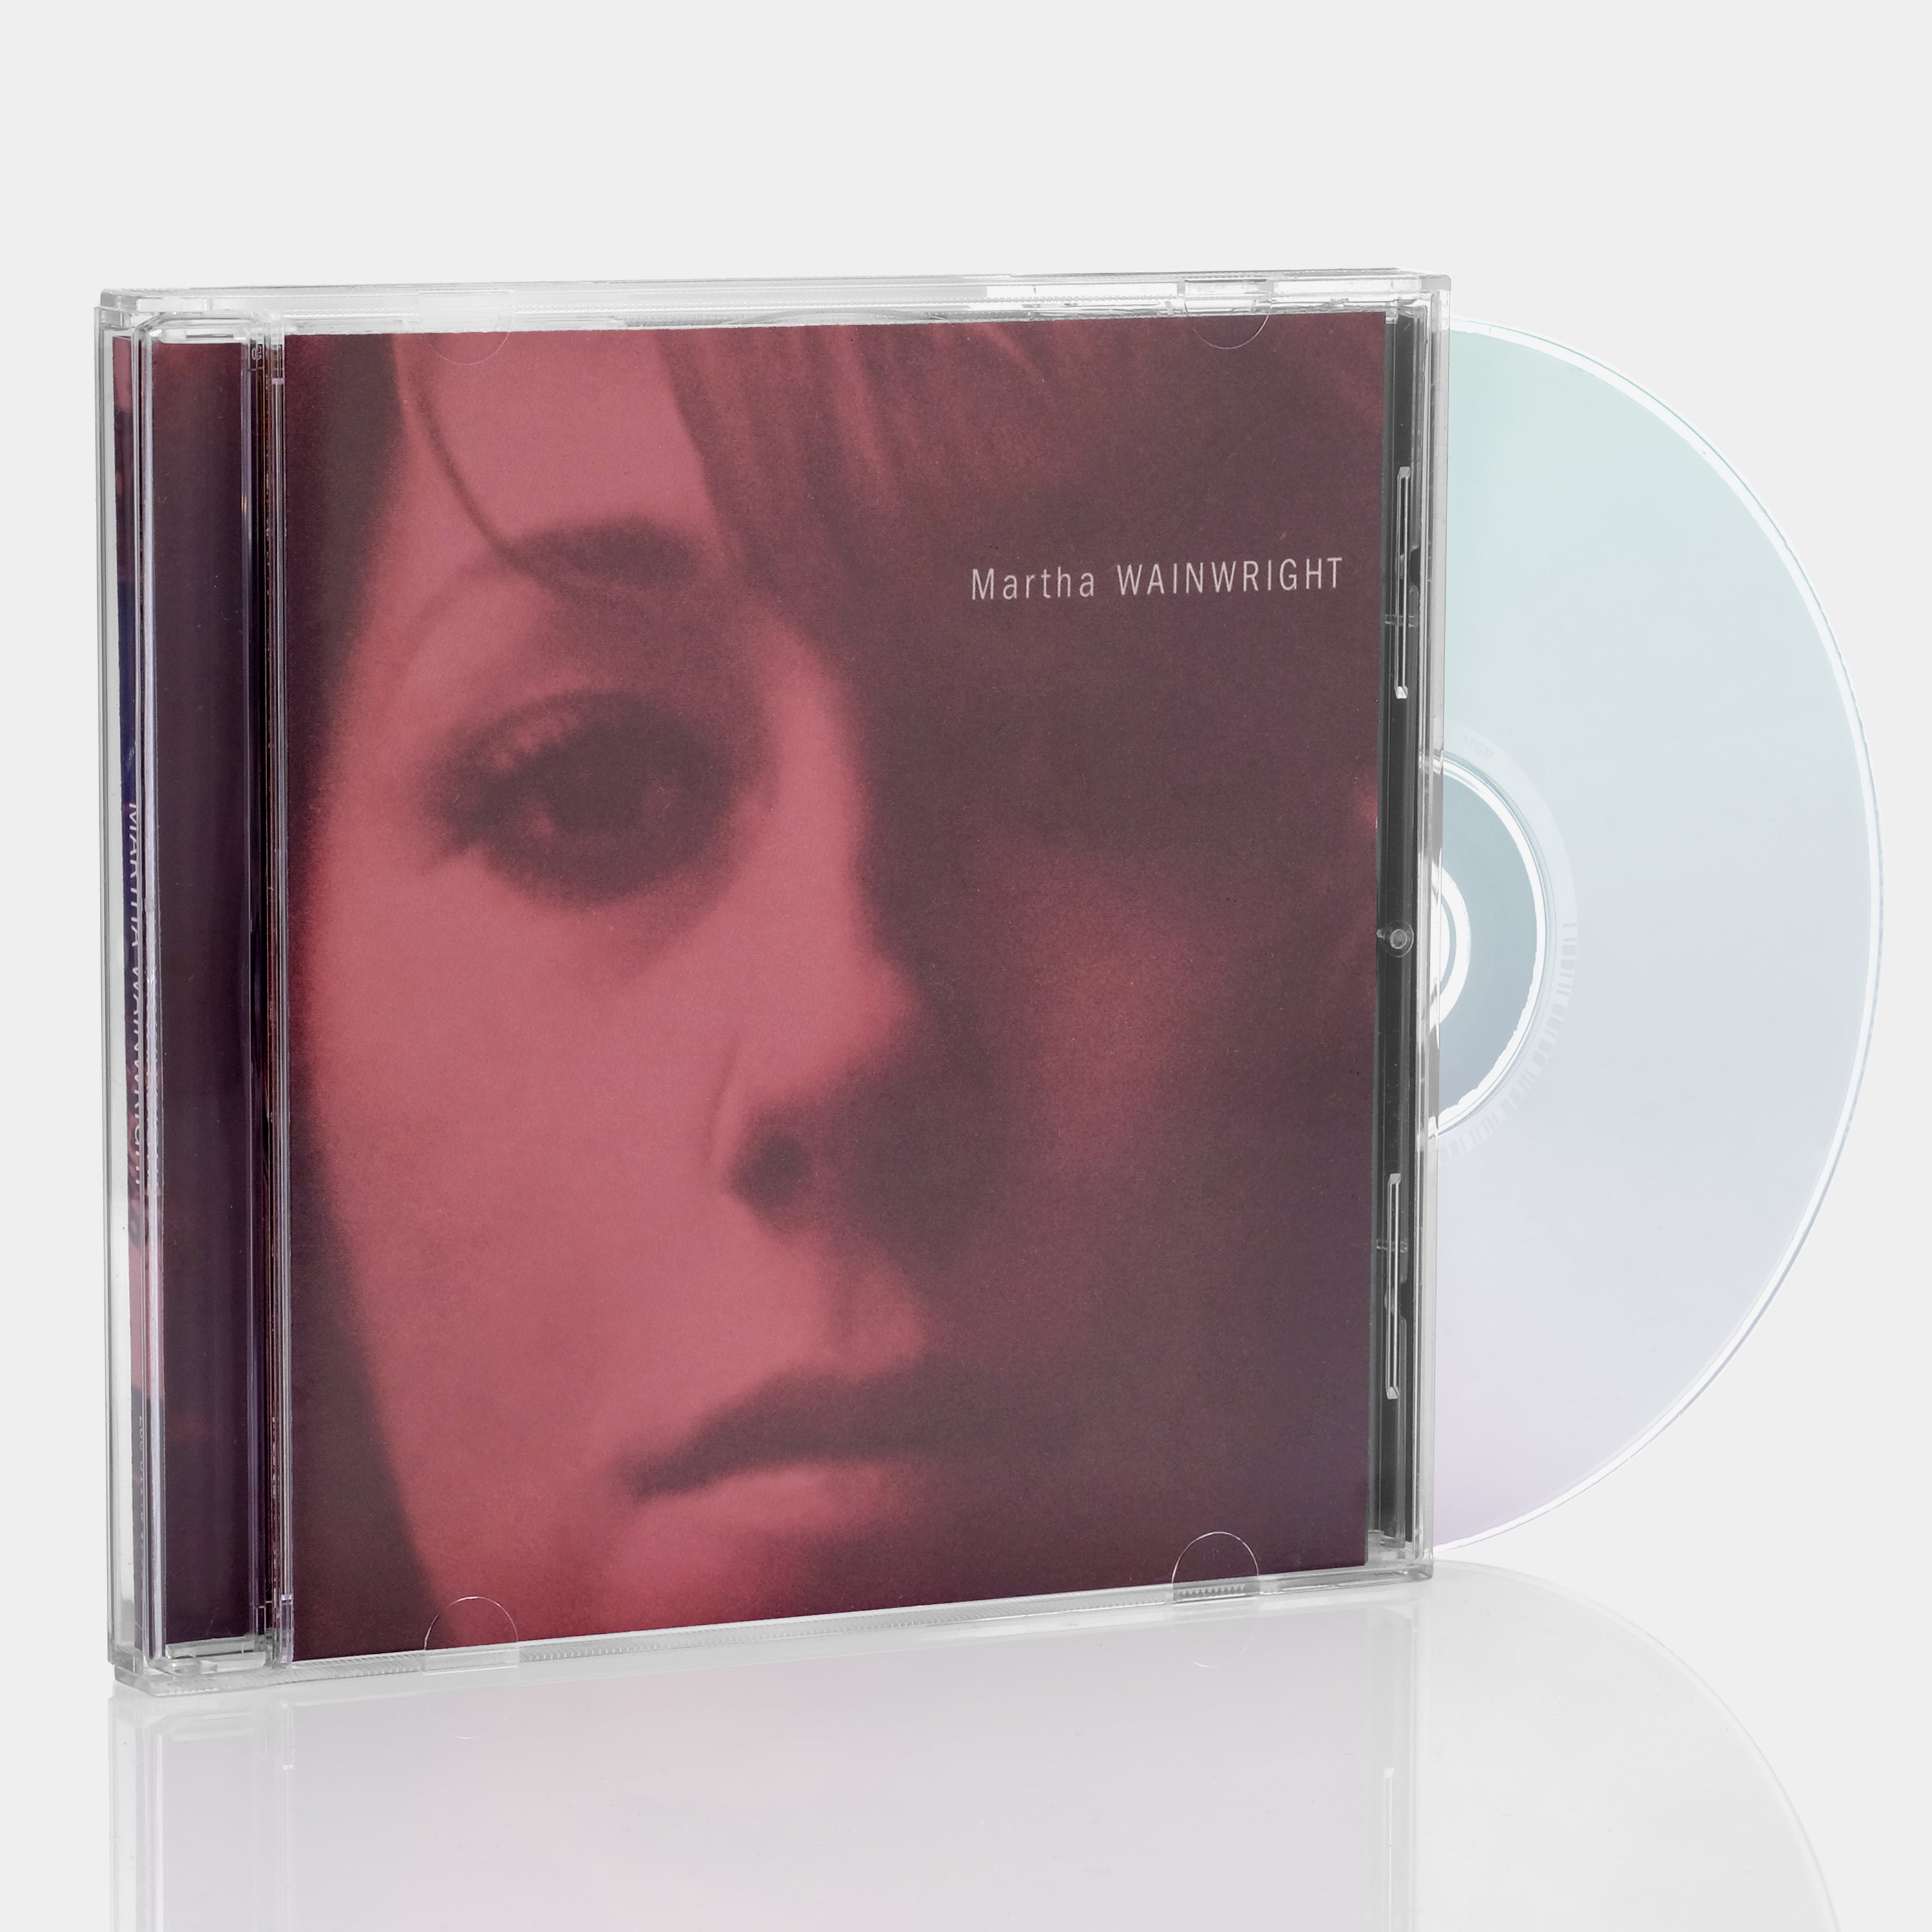 Martha Wainwright - Martha Wainwright CD